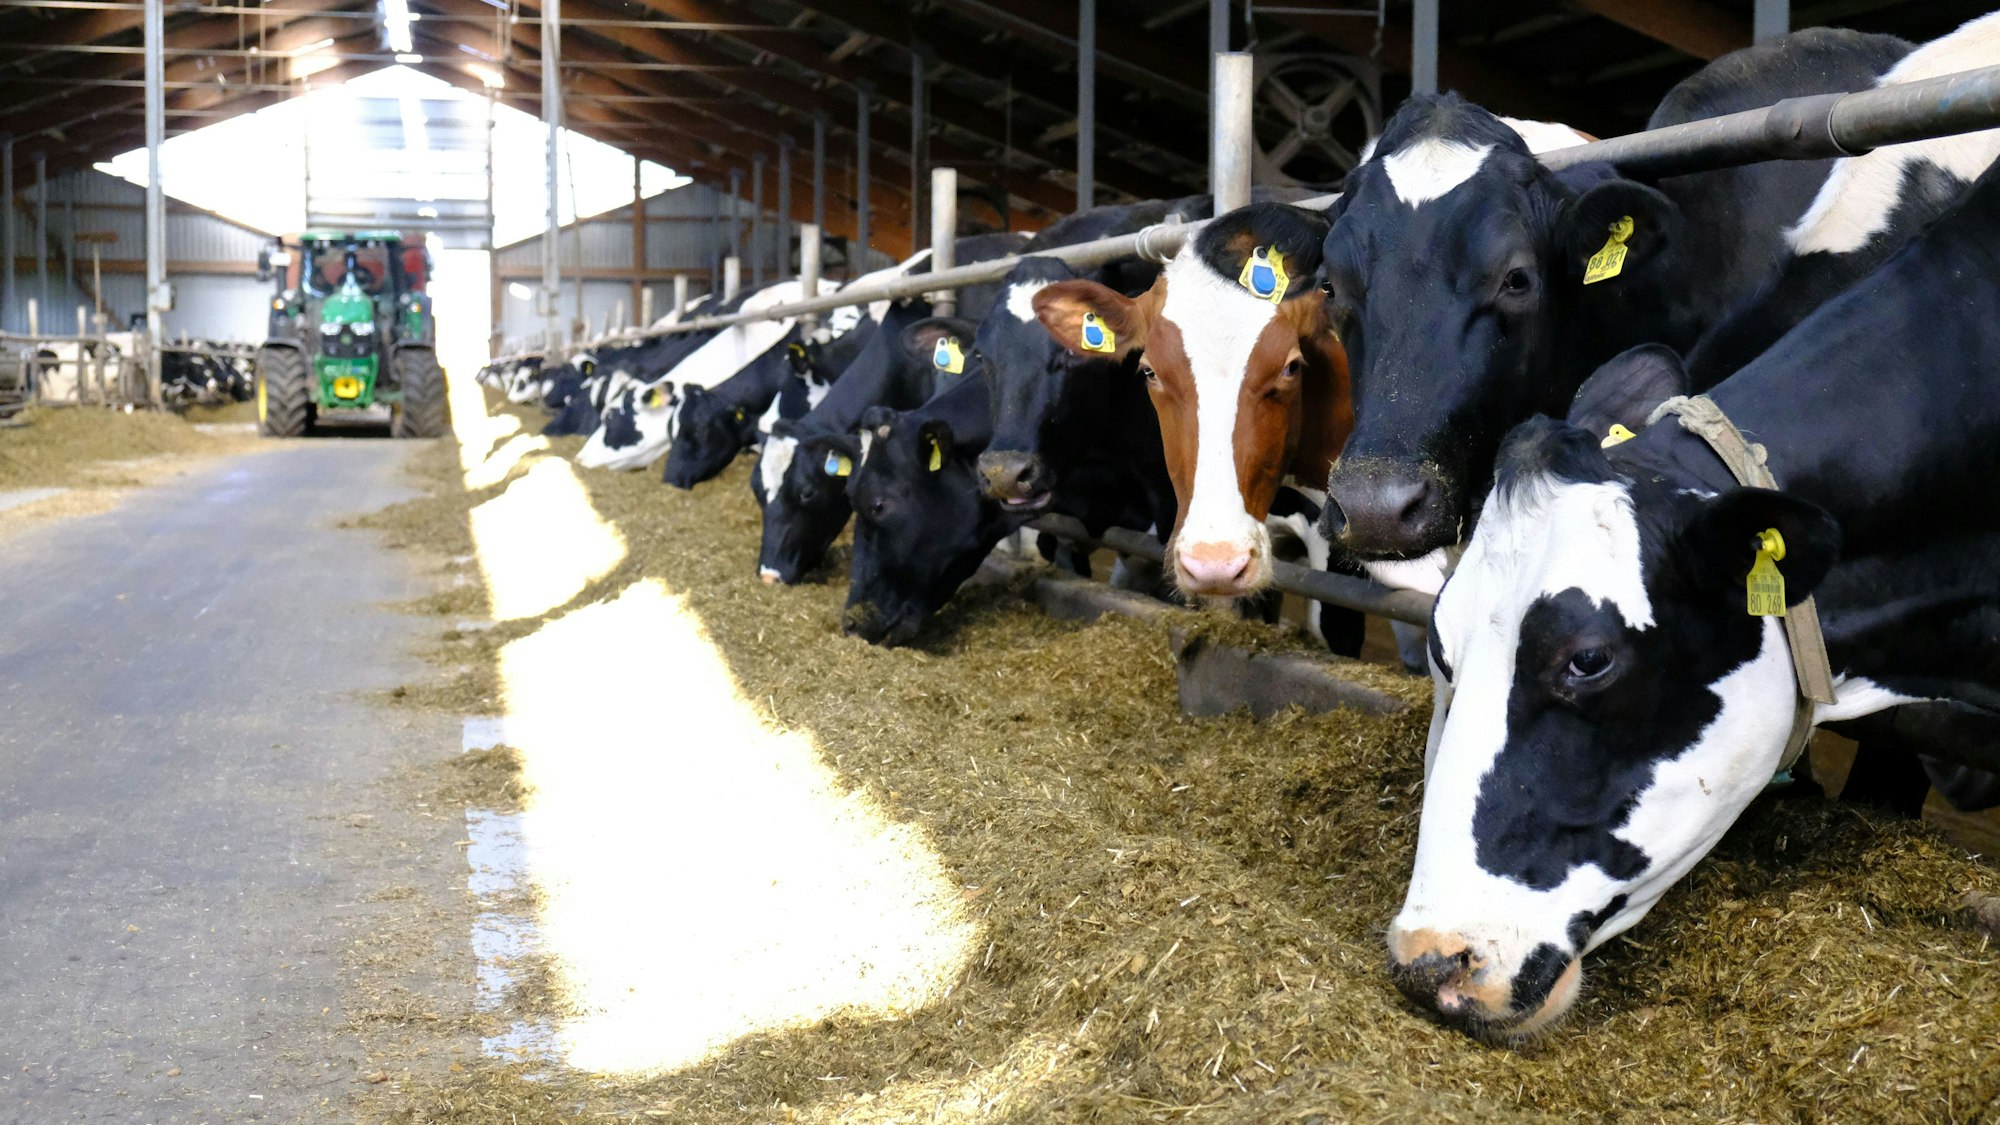 Kühe stehen in einem modernen Stall und fressen. Im Hintergrund ist ein Traktor zu erkennen.